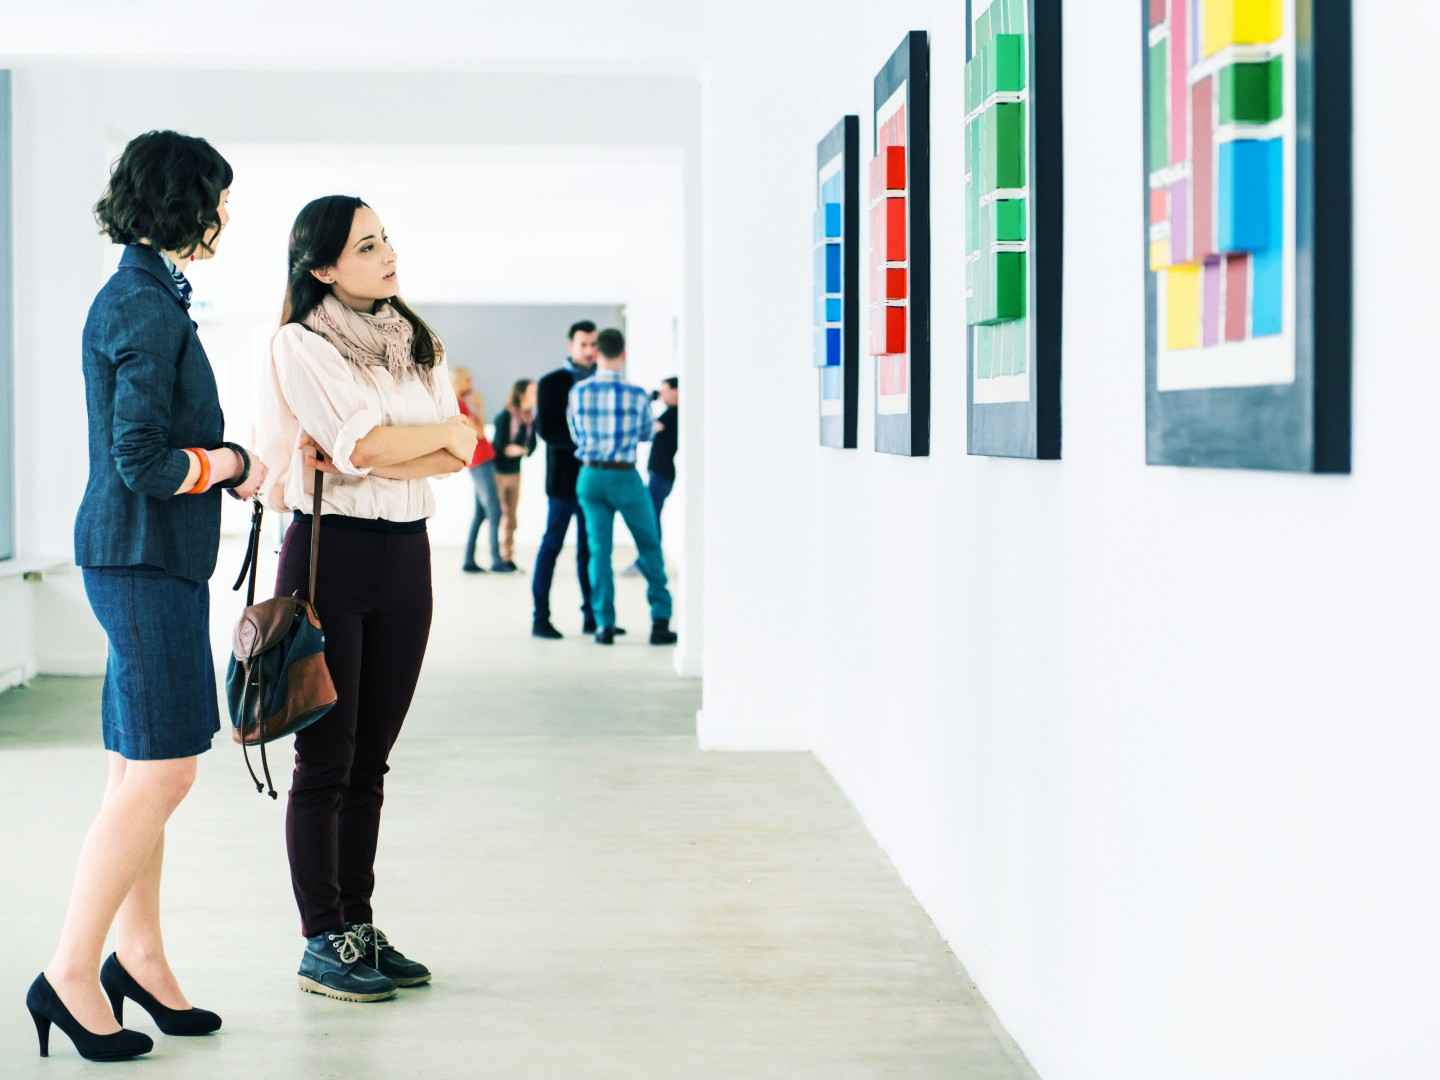 Gothaer Kunstausstellungsversicherung: Besucher*innen bewundern moderne Kunst auf einer Kunstausstellung.